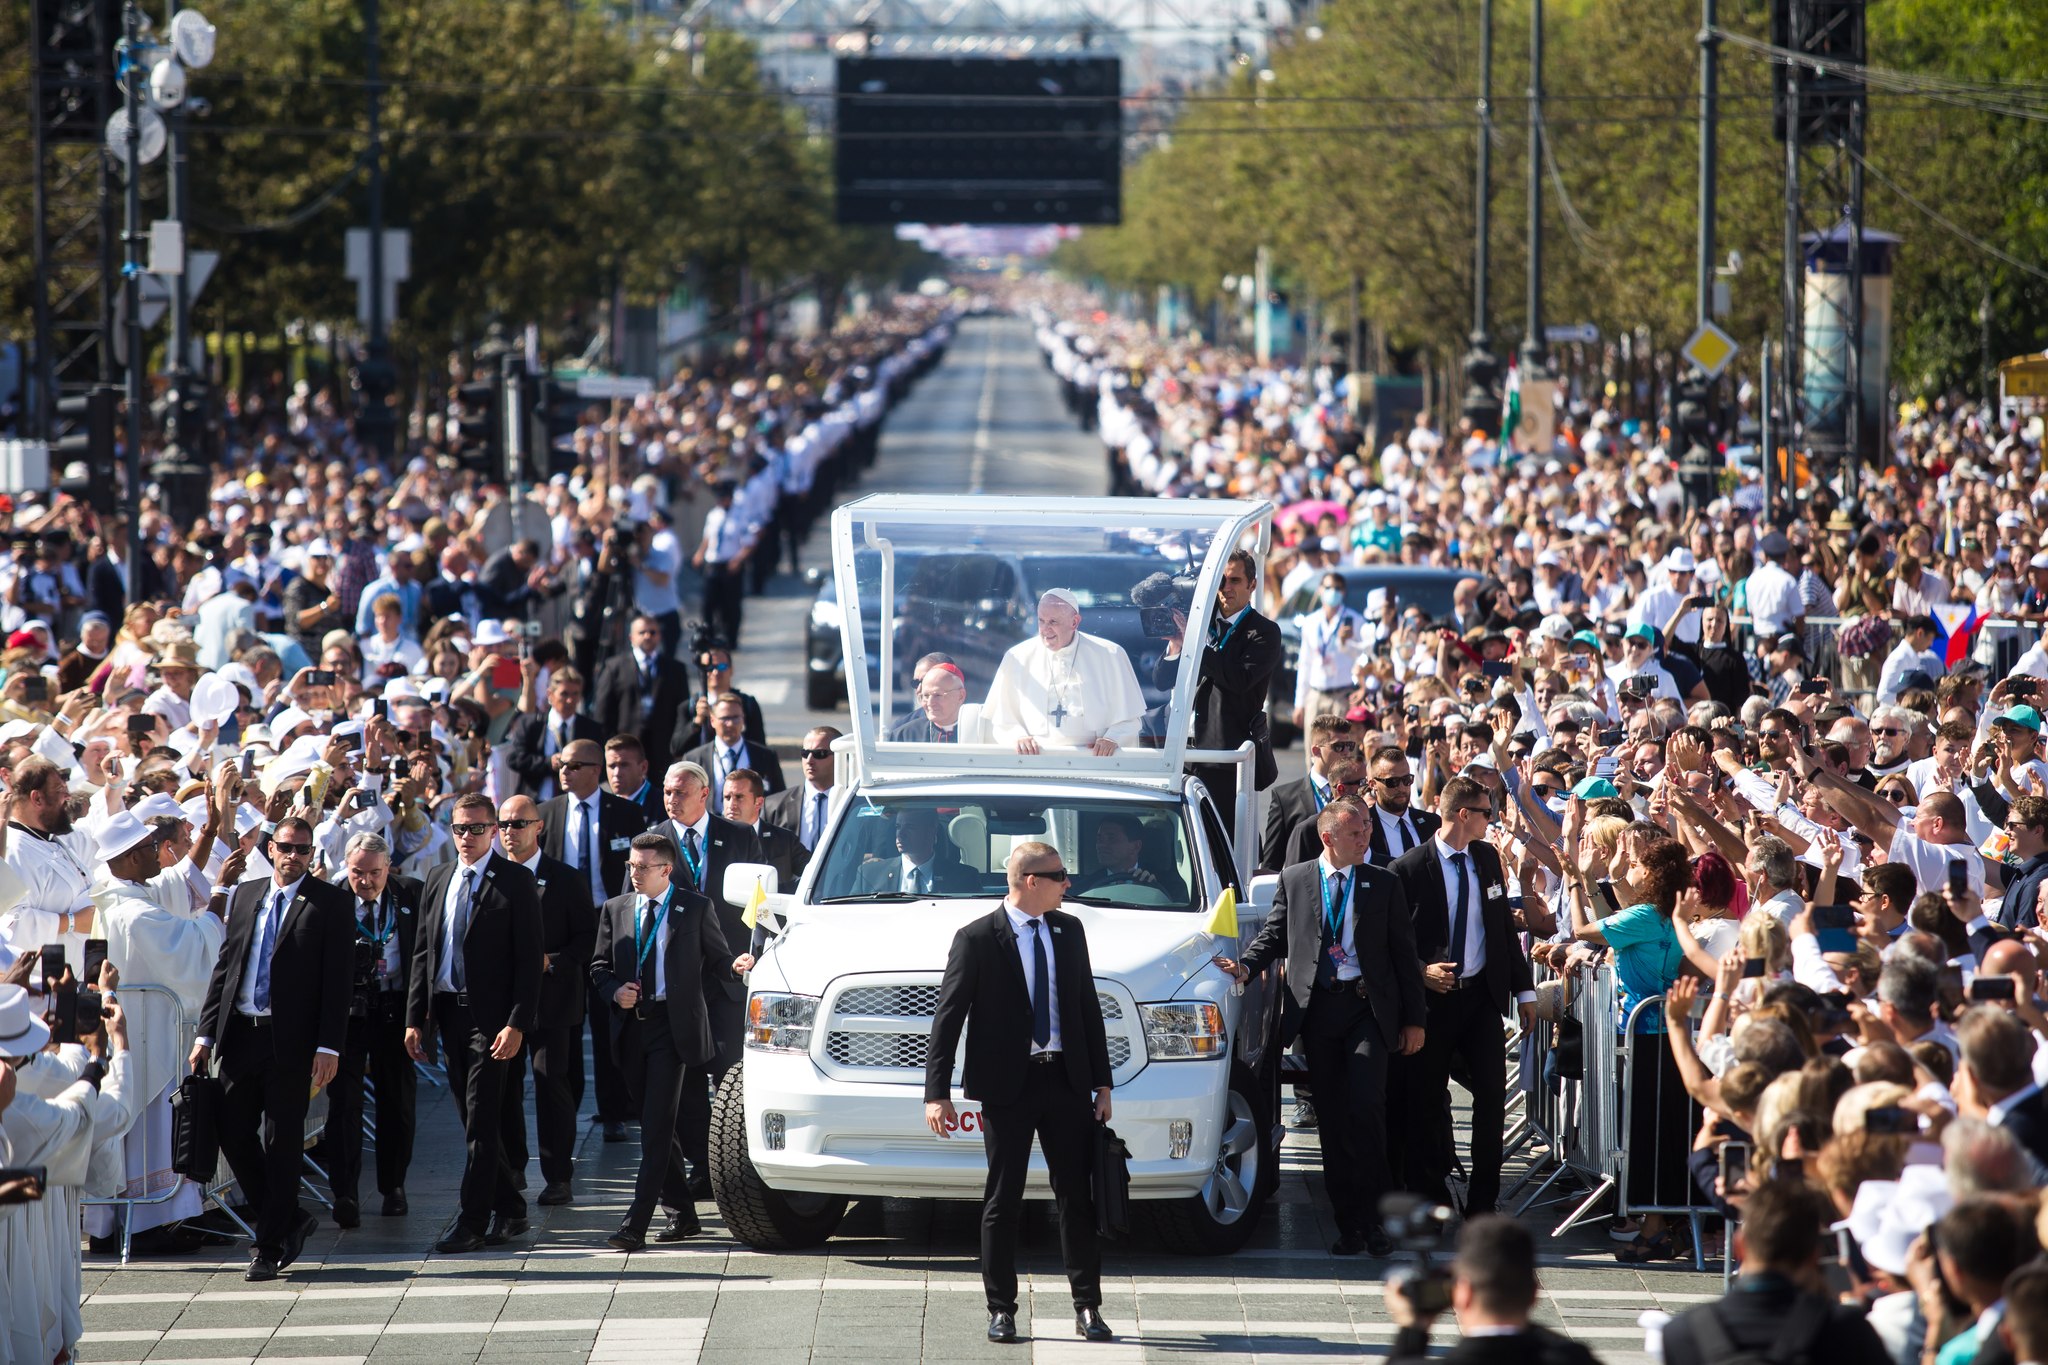 Papstbesuch: Das sind die Throne, auf denen Papst Franziskus sitzen wird